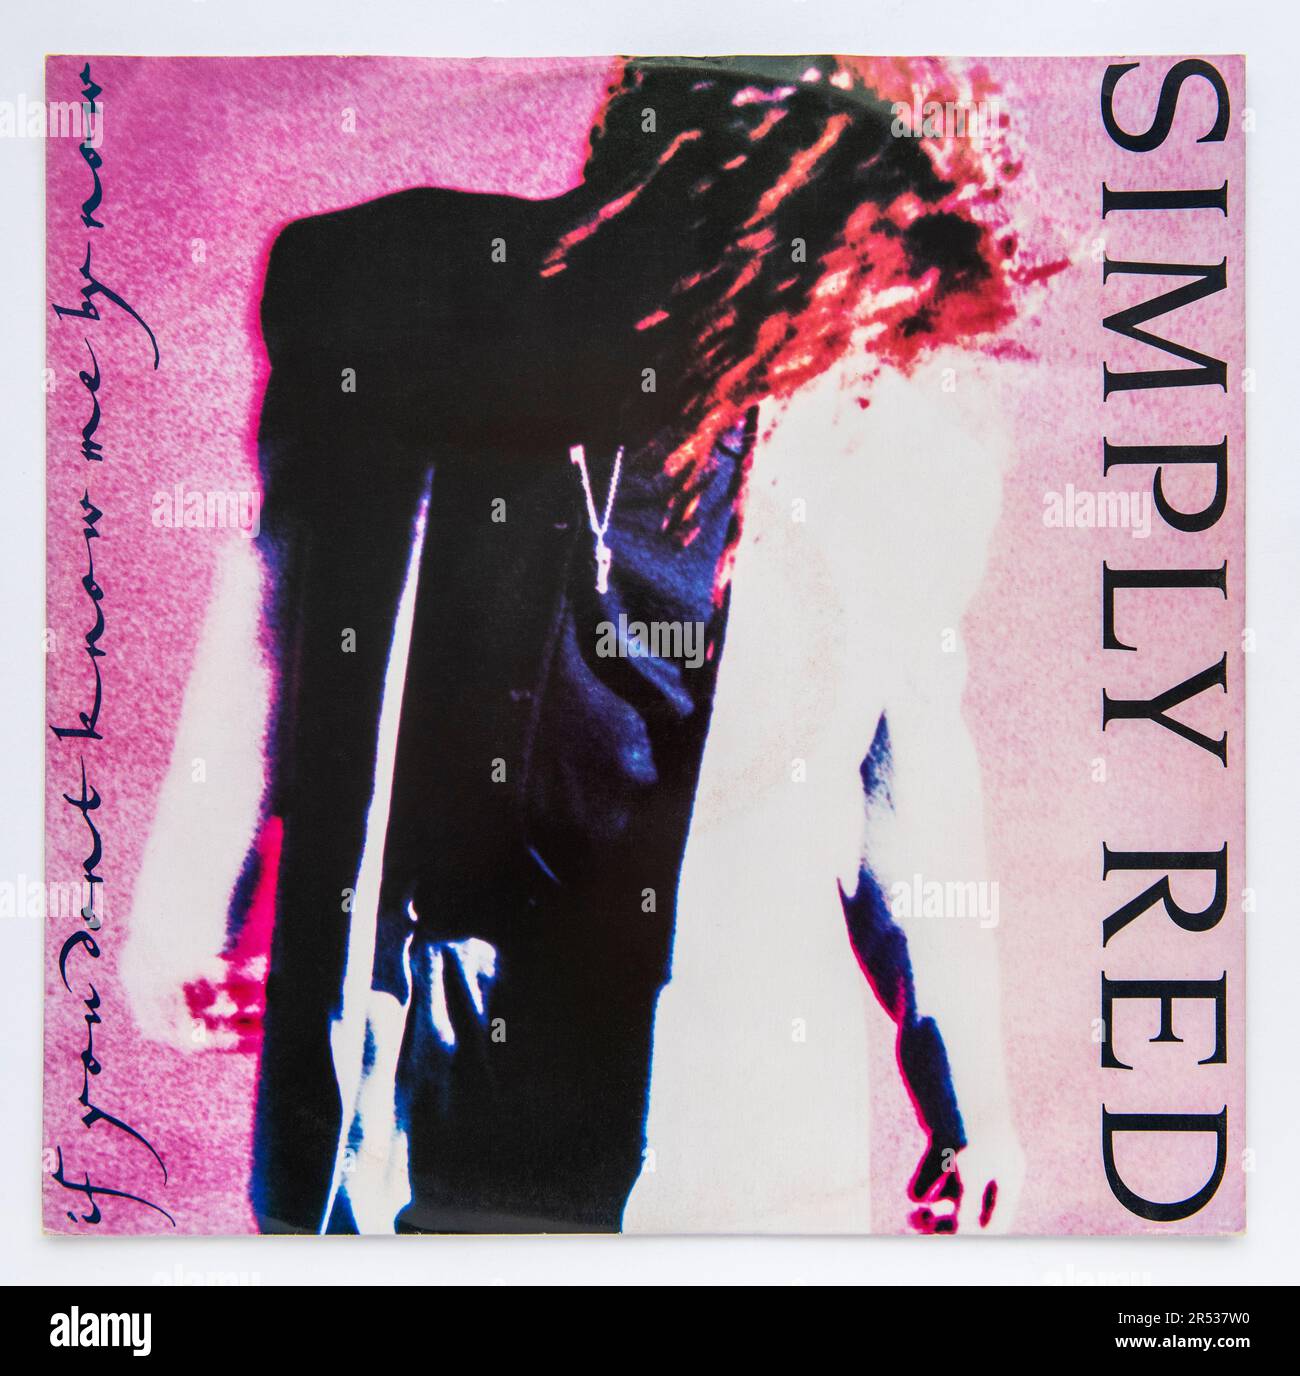 Couverture d'image de la version simple de 12 pouces de si vous ne me connaissez pas maintenant par Simply Red, qui a été publié en 1989 Banque D'Images